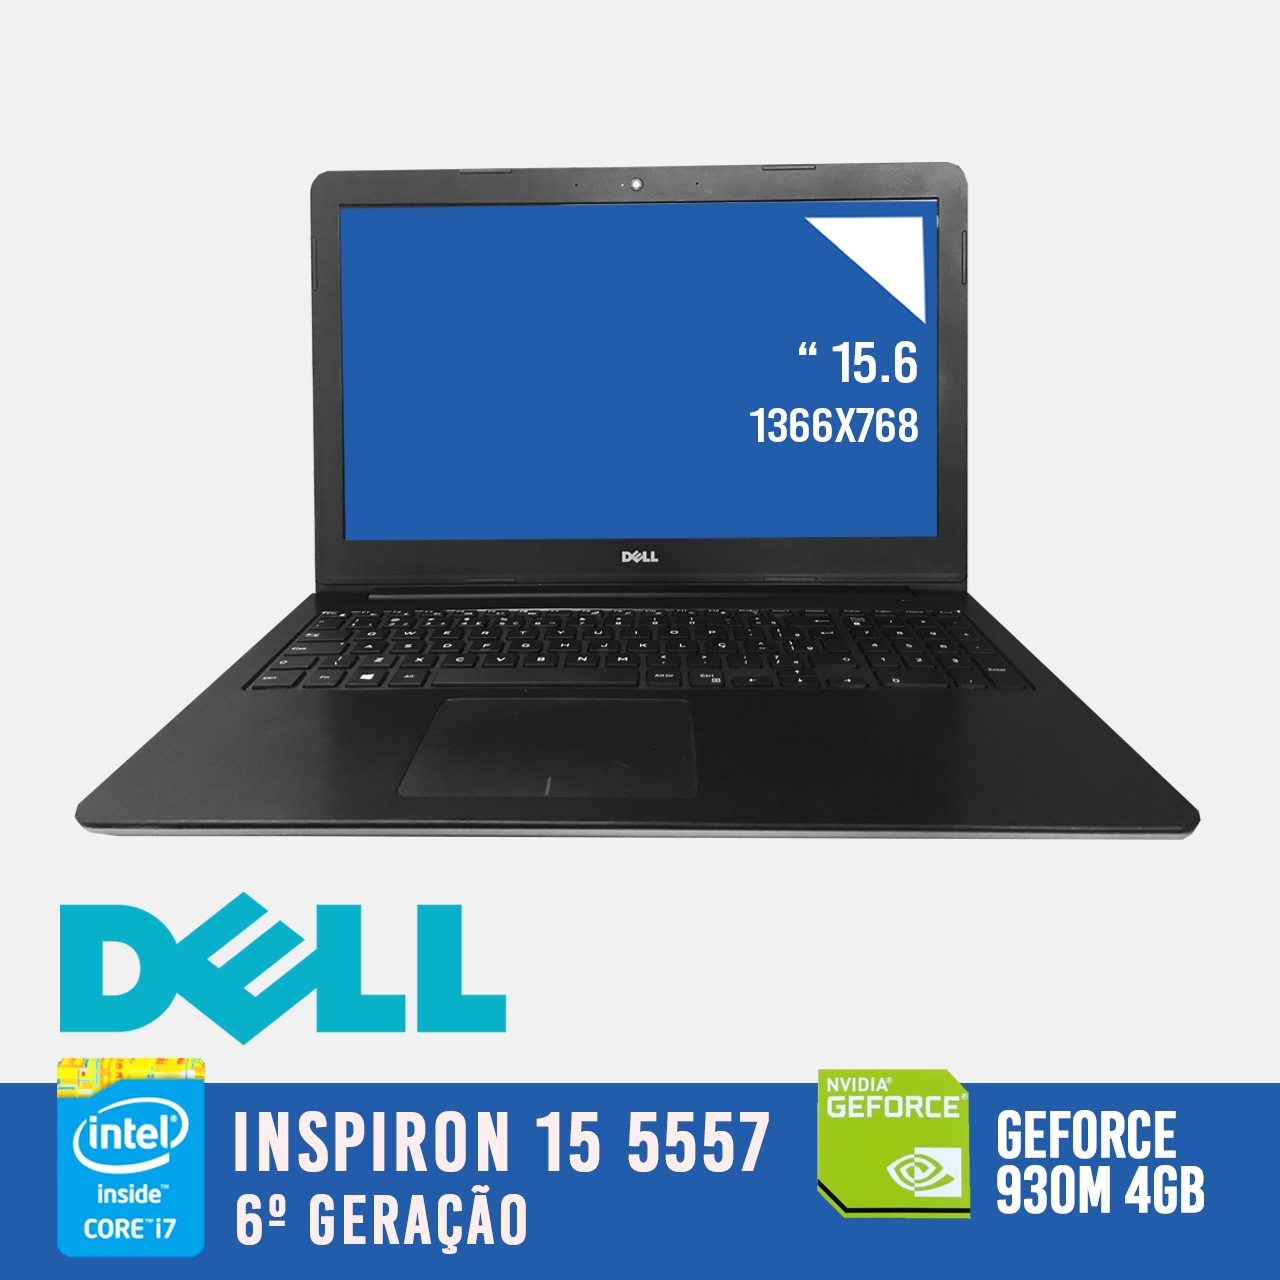 Laptop DELL Inspiron 15 5557 Intel i7 de 6a. Geração com placa de vídeo dedicada NVIDIA GeForce 930M DE 4GB